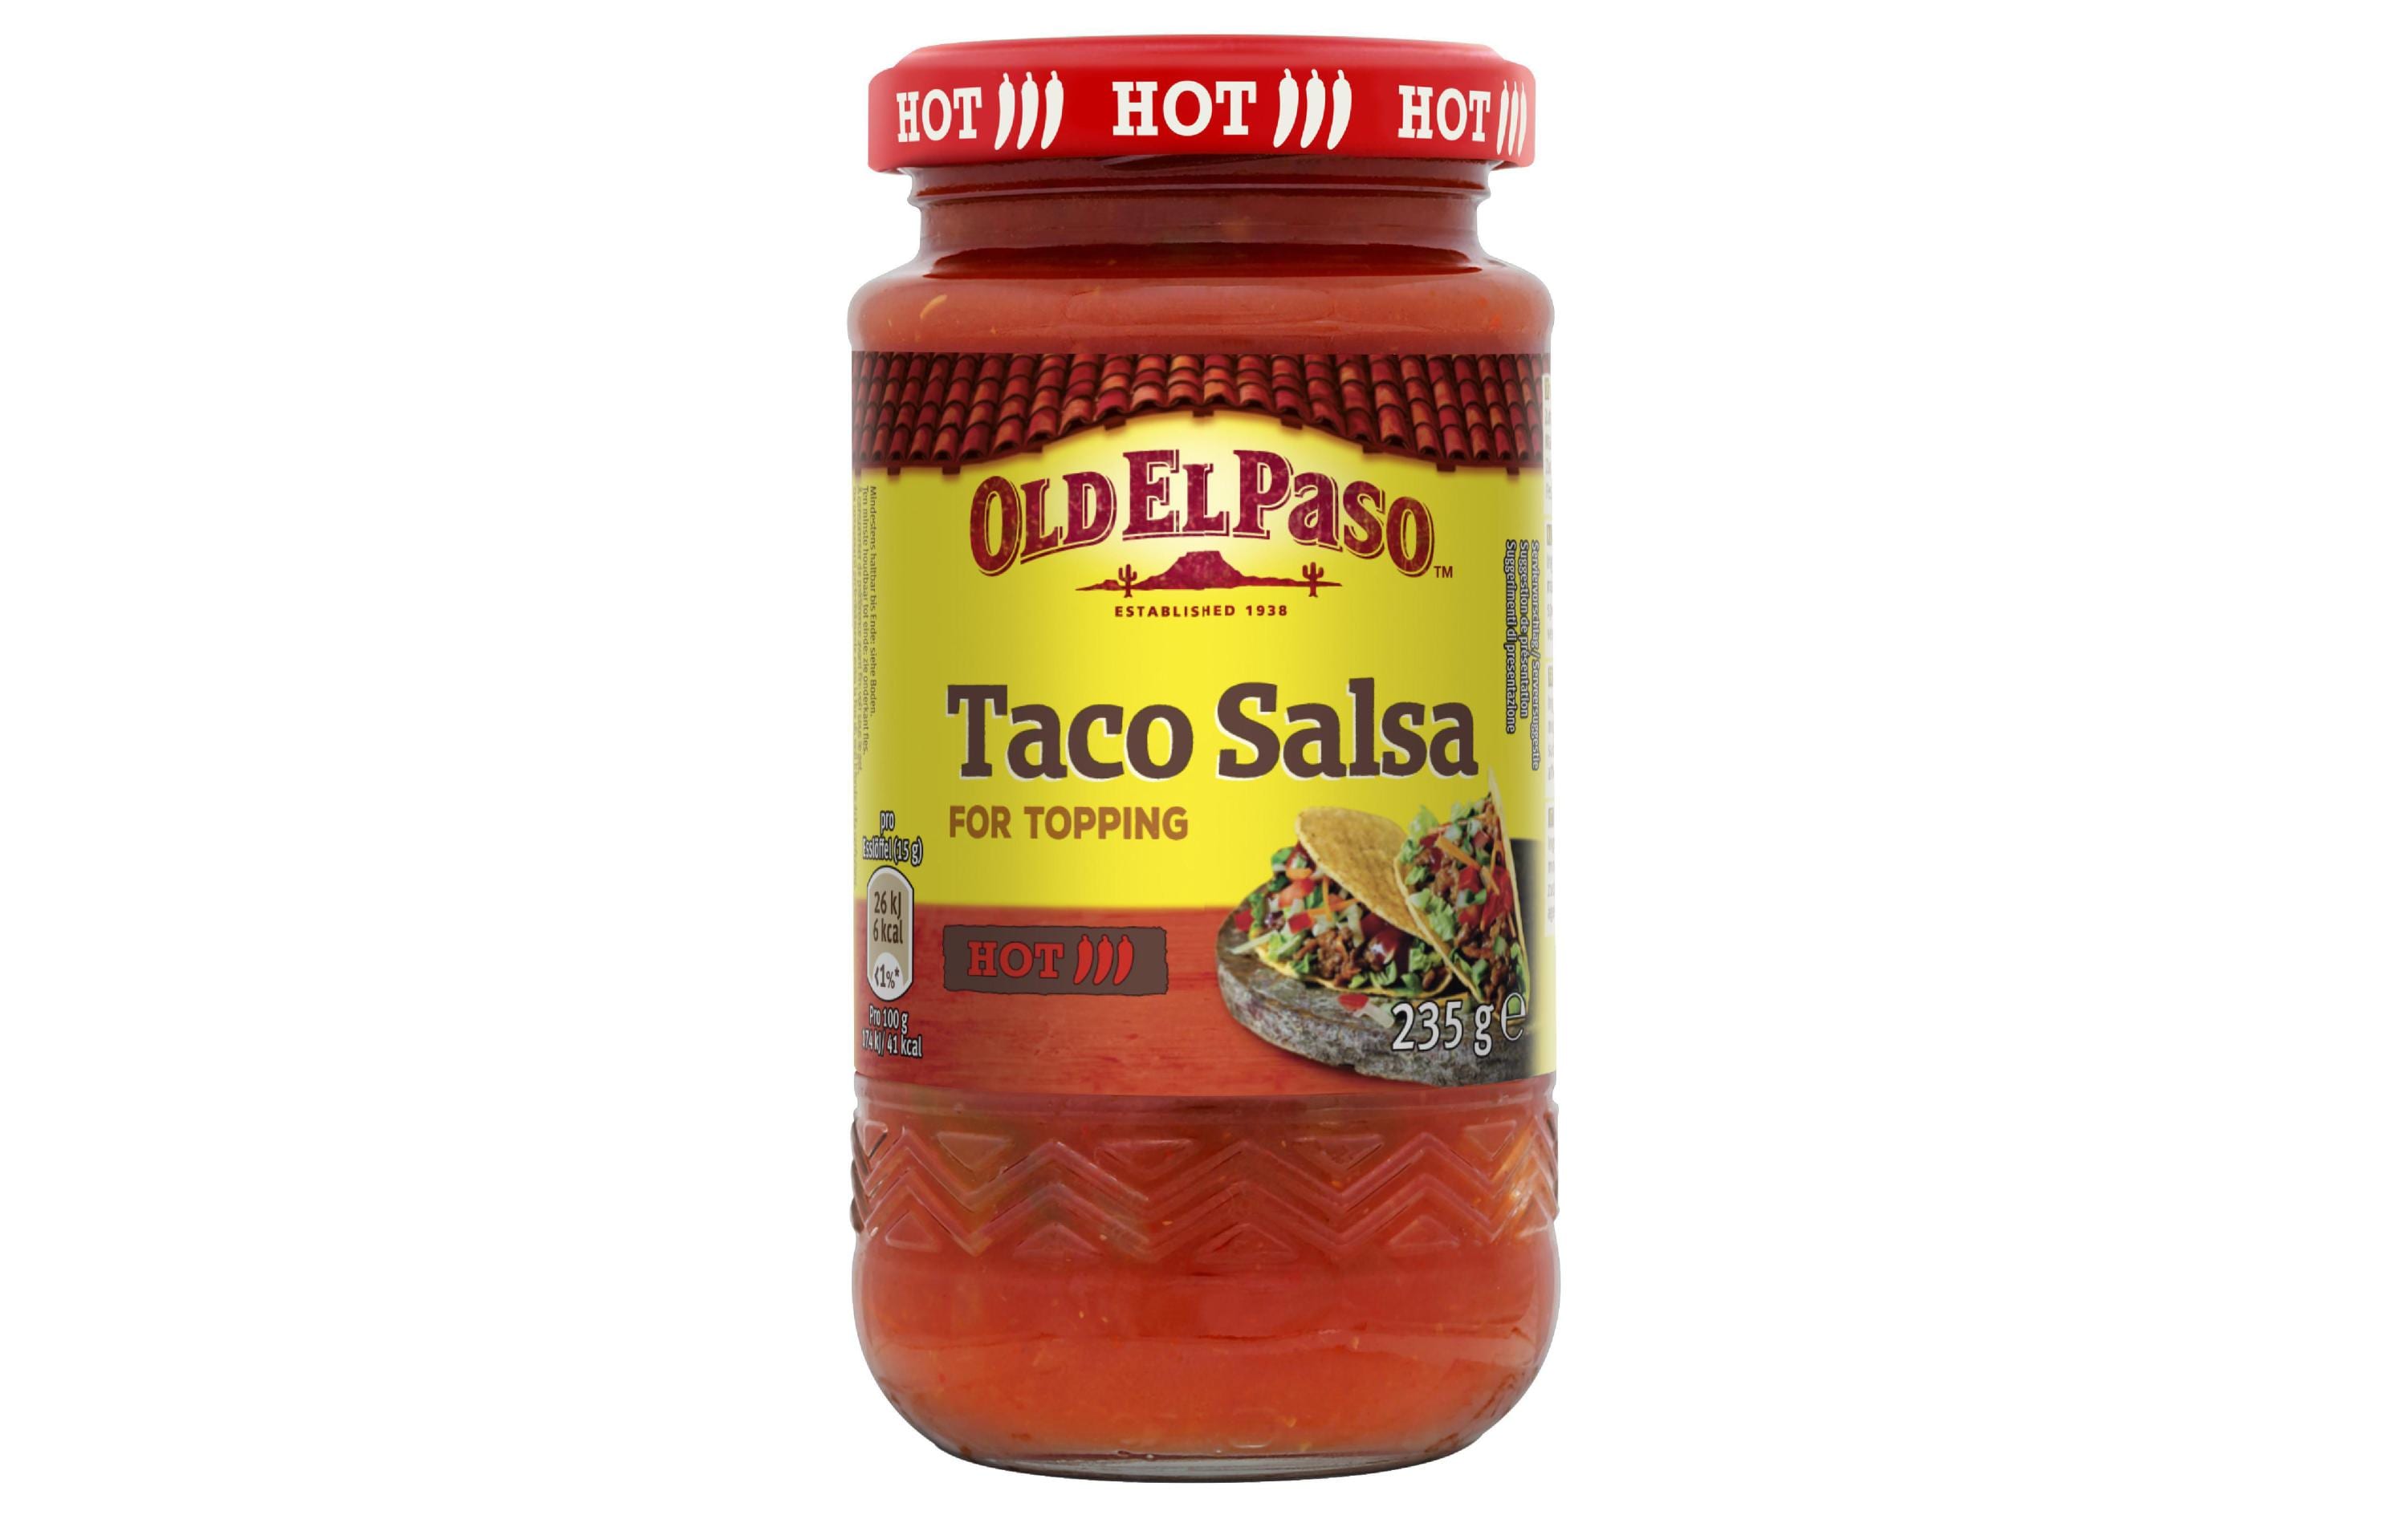 Old El Paso Hot Taco Salsa 235 g